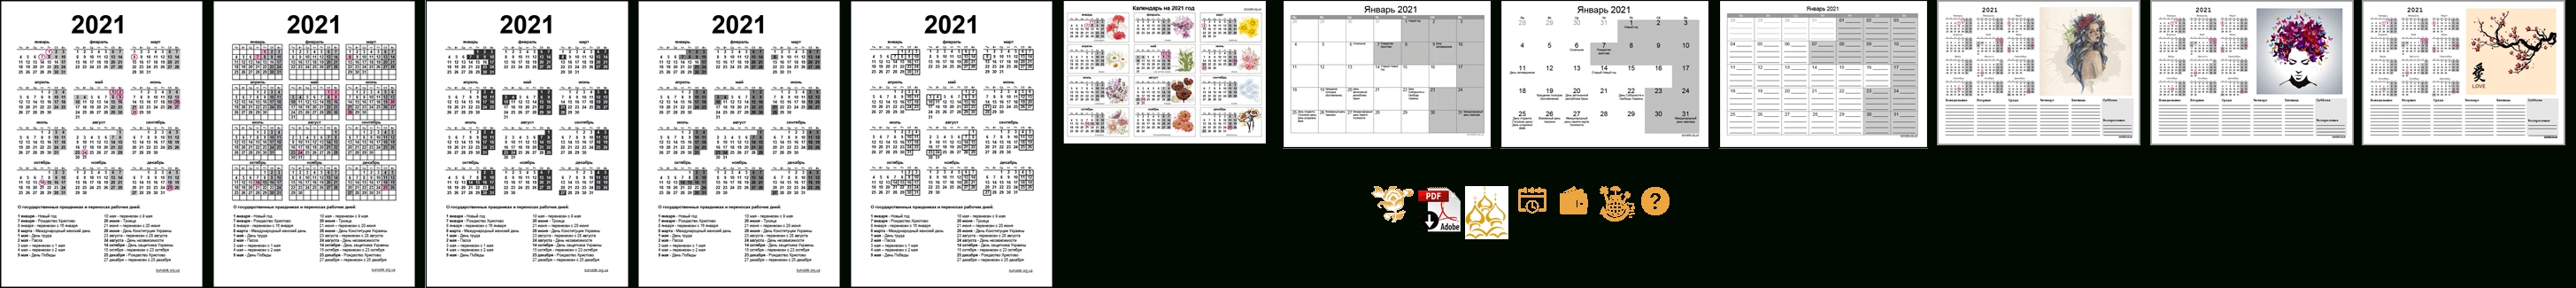 Календарь 2021 Года (Украина) С Праздничными Днями И Выходными Календарная Сетка По Месяцам 2021-2021